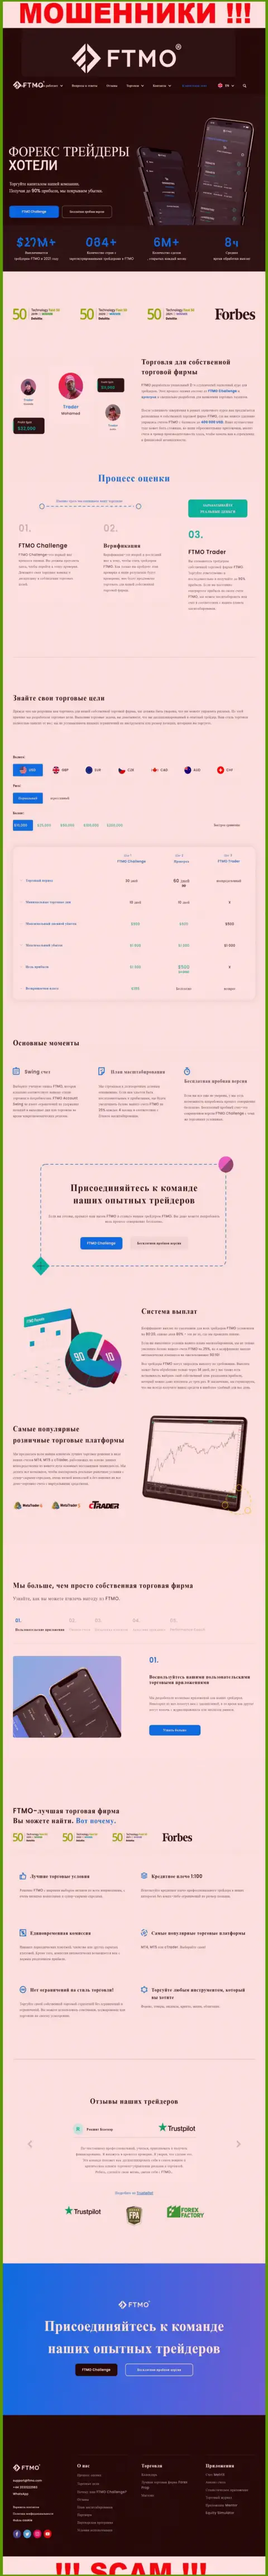 Официальная интернет-страничка жульнического проекта ФТМО Ком